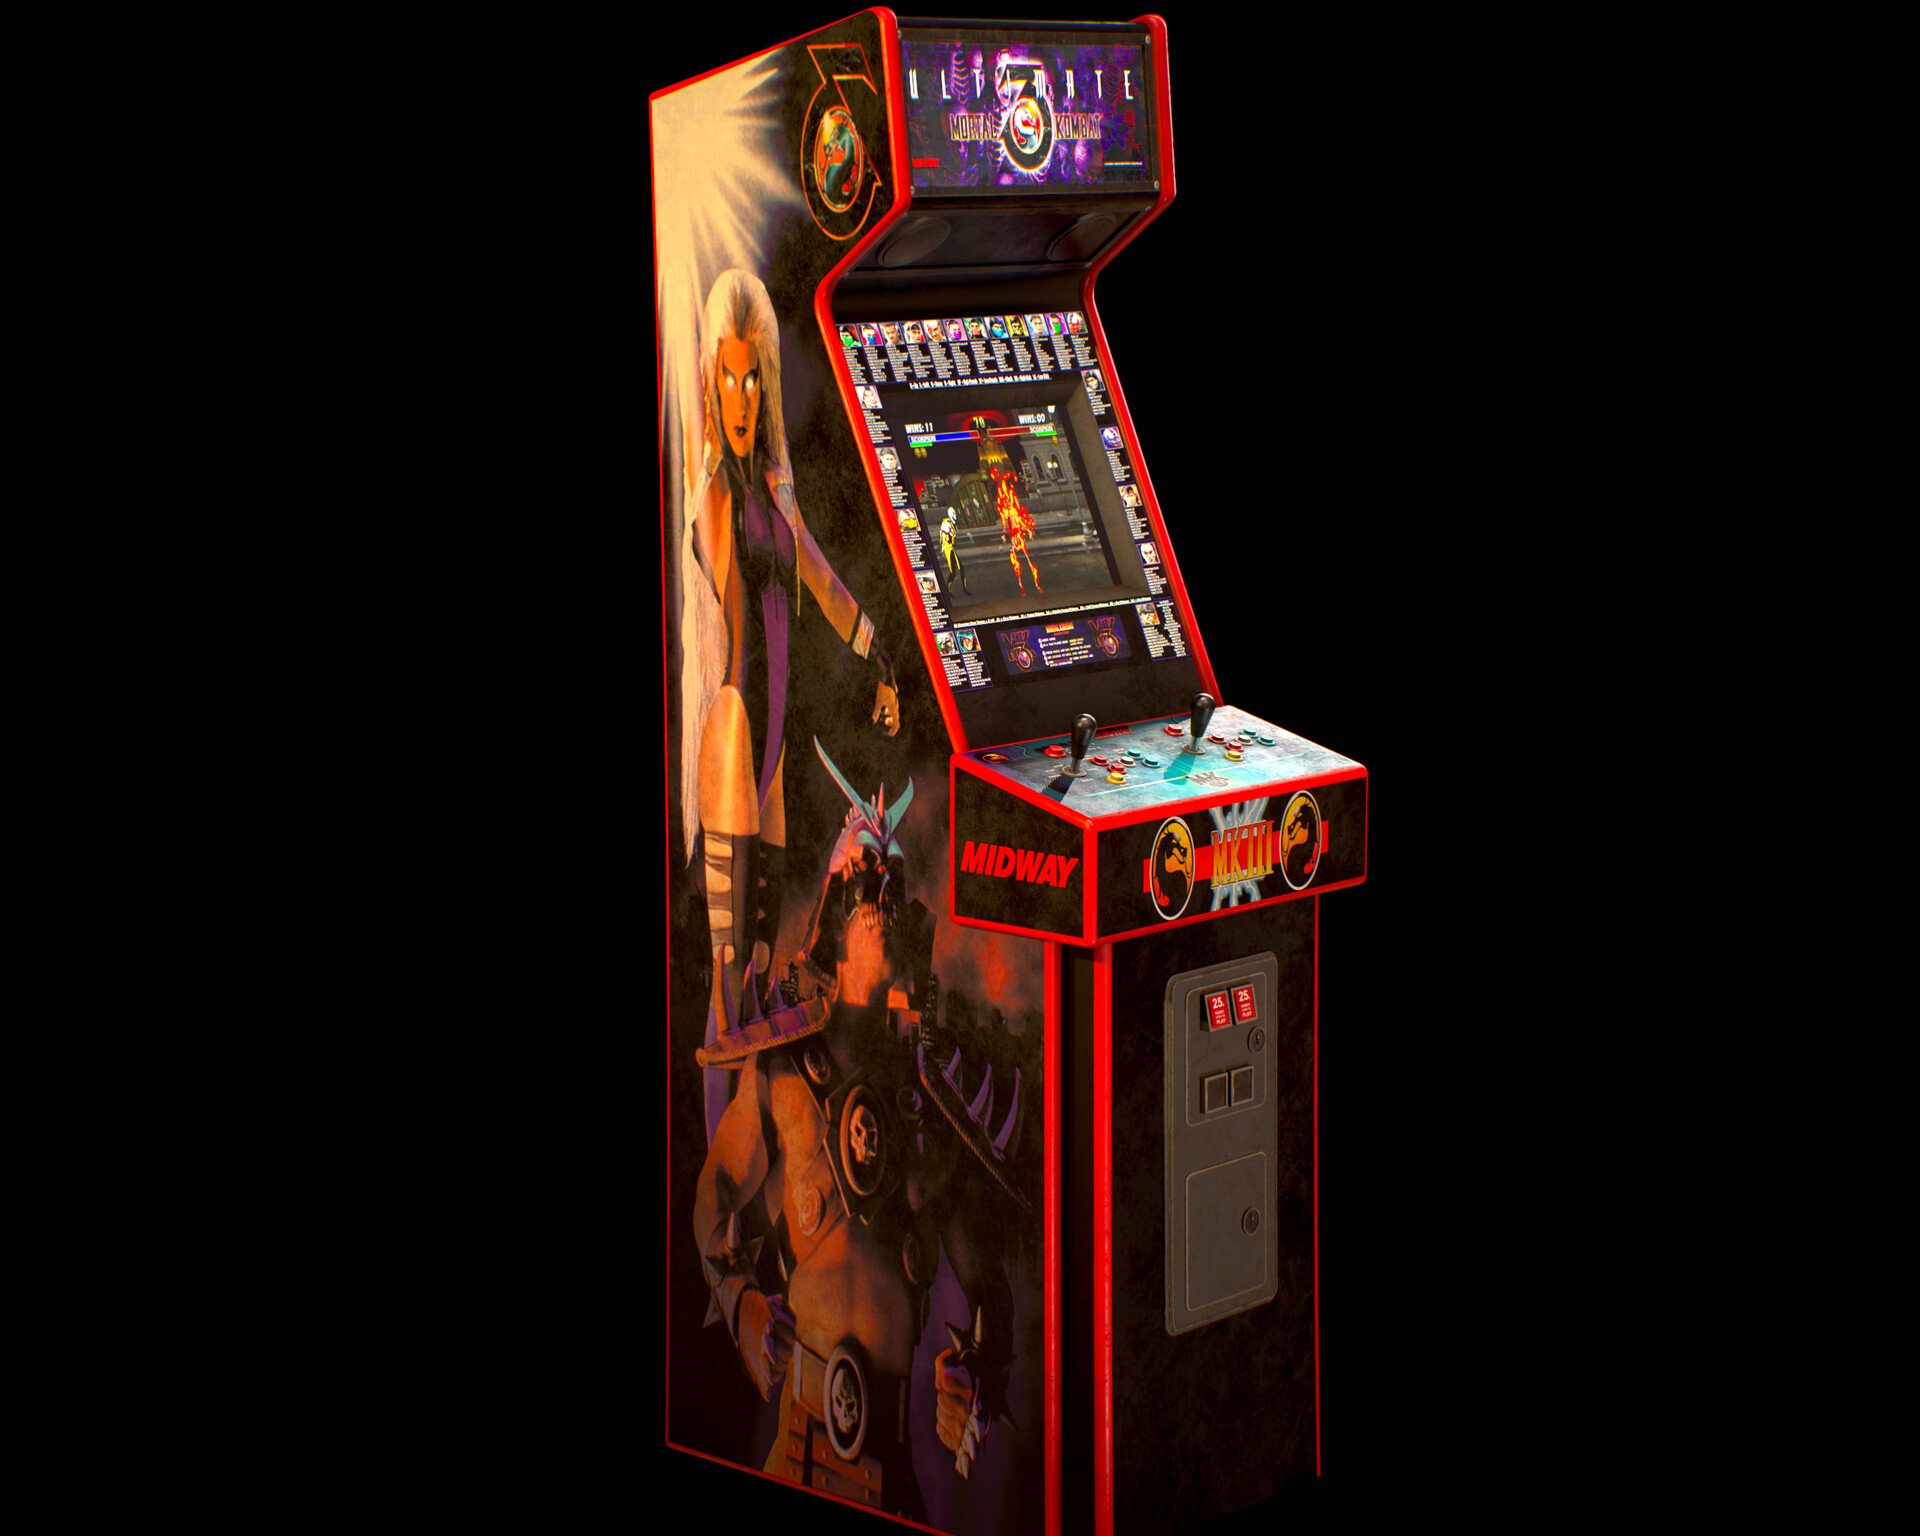 Игровые автоматы рейтинг новых лучших strahov art. Аркадный автомат мортал комбат. Игровой автомат Mortal Kombat 3. Mortal Kombat 3 Arcade Machine. Игровой автомат мортал комбат.